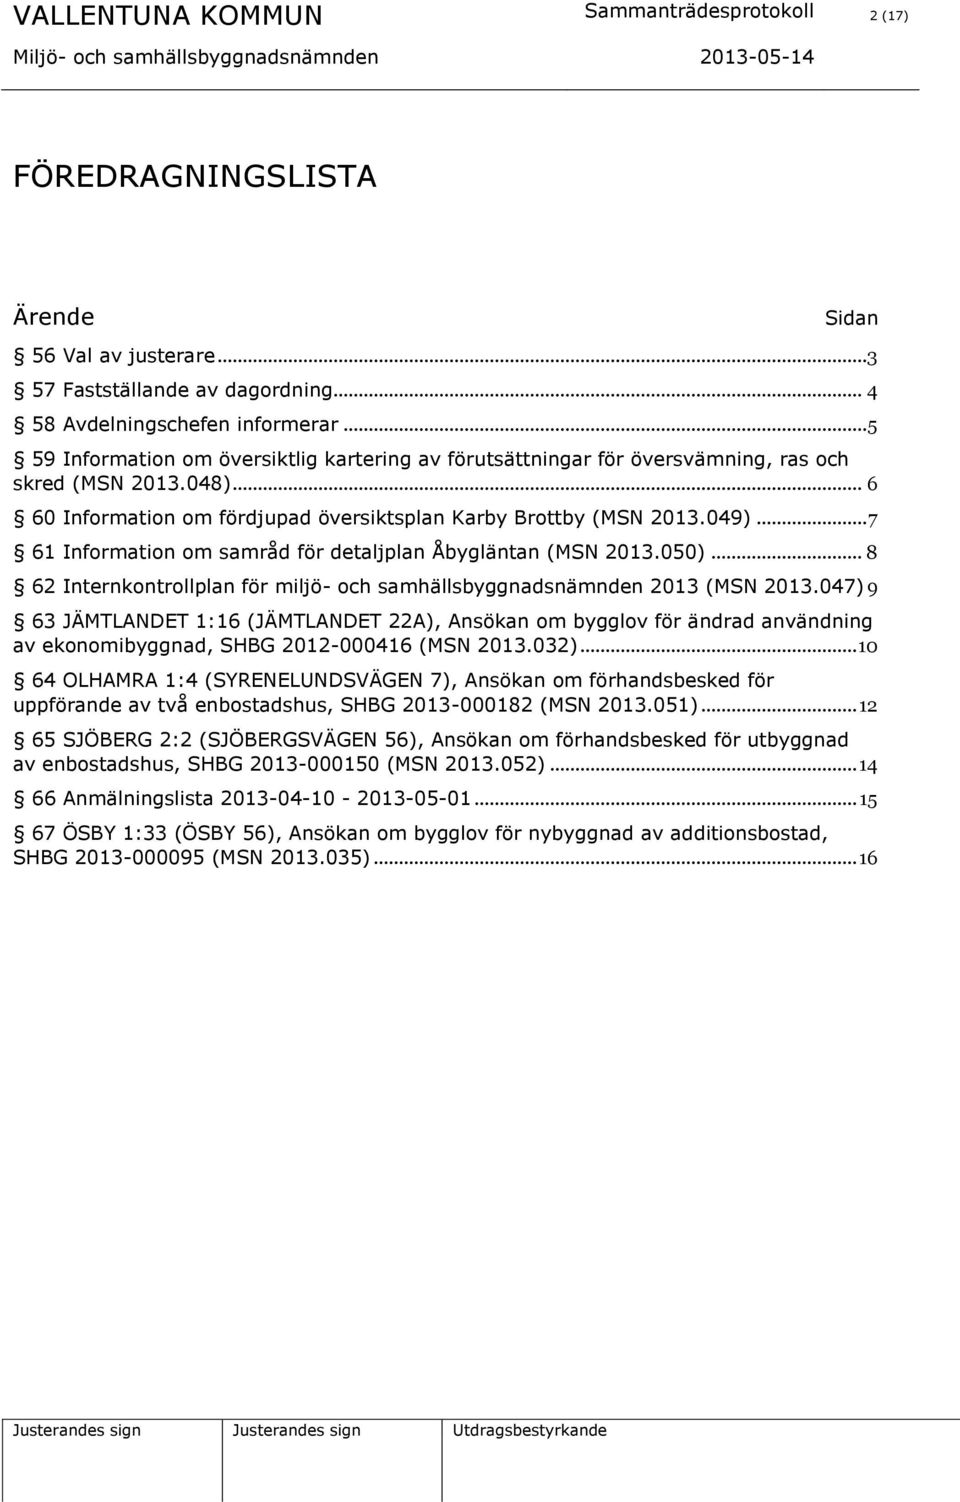 .. 7 61 Information om samråd för detaljplan Åbygläntan (MSN 2013.050)... 8 62 Internkontrollplan för miljö- och samhällsbyggnadsnämnden 2013 (MSN 2013.